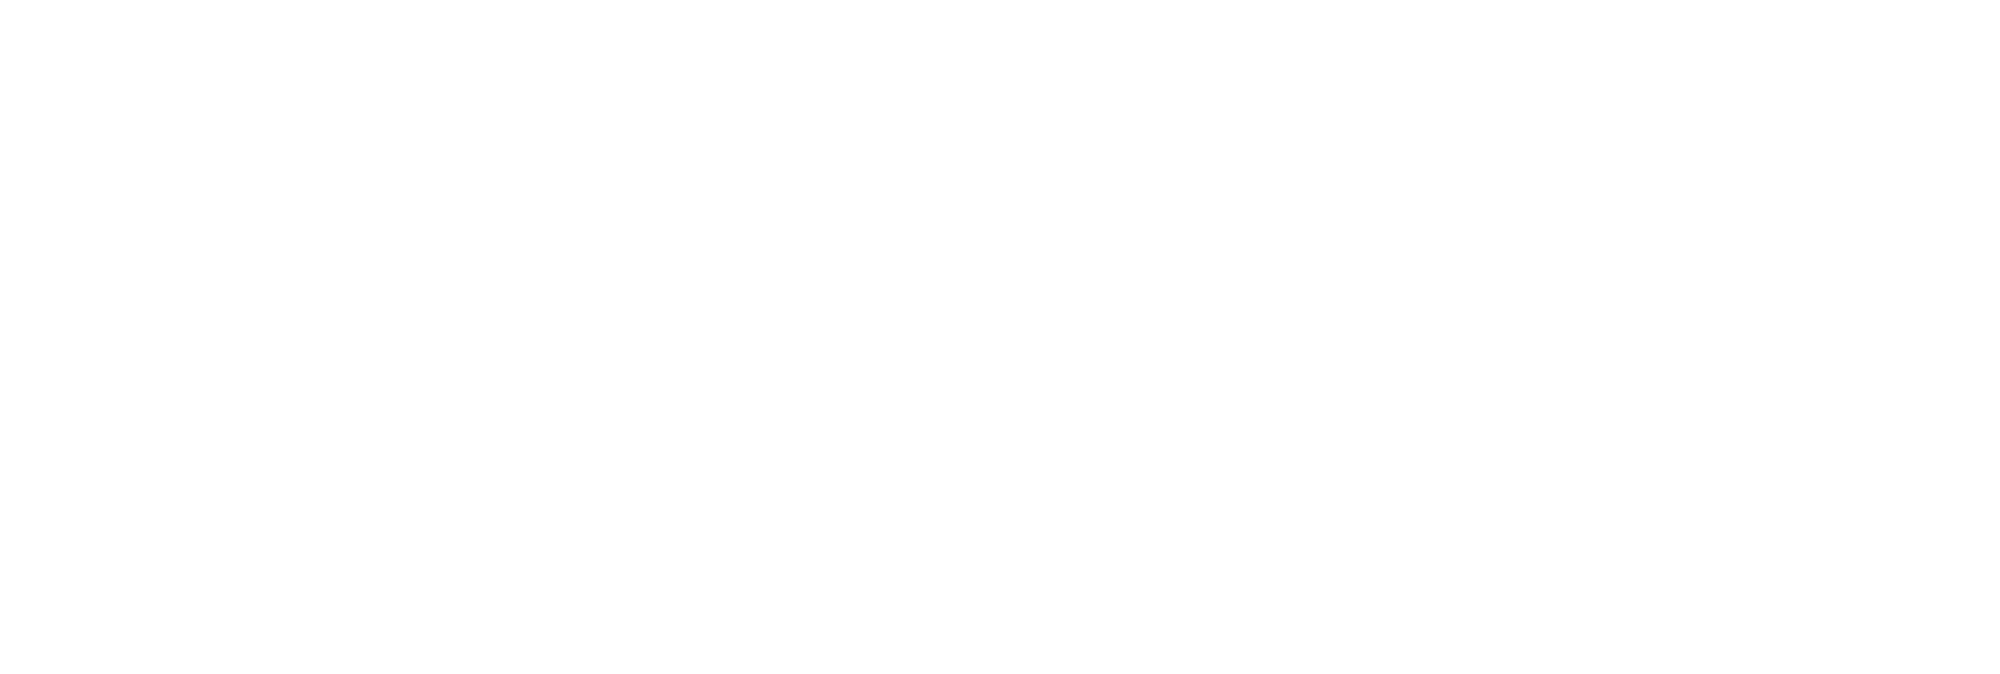 DDW American Gastroenterological Association